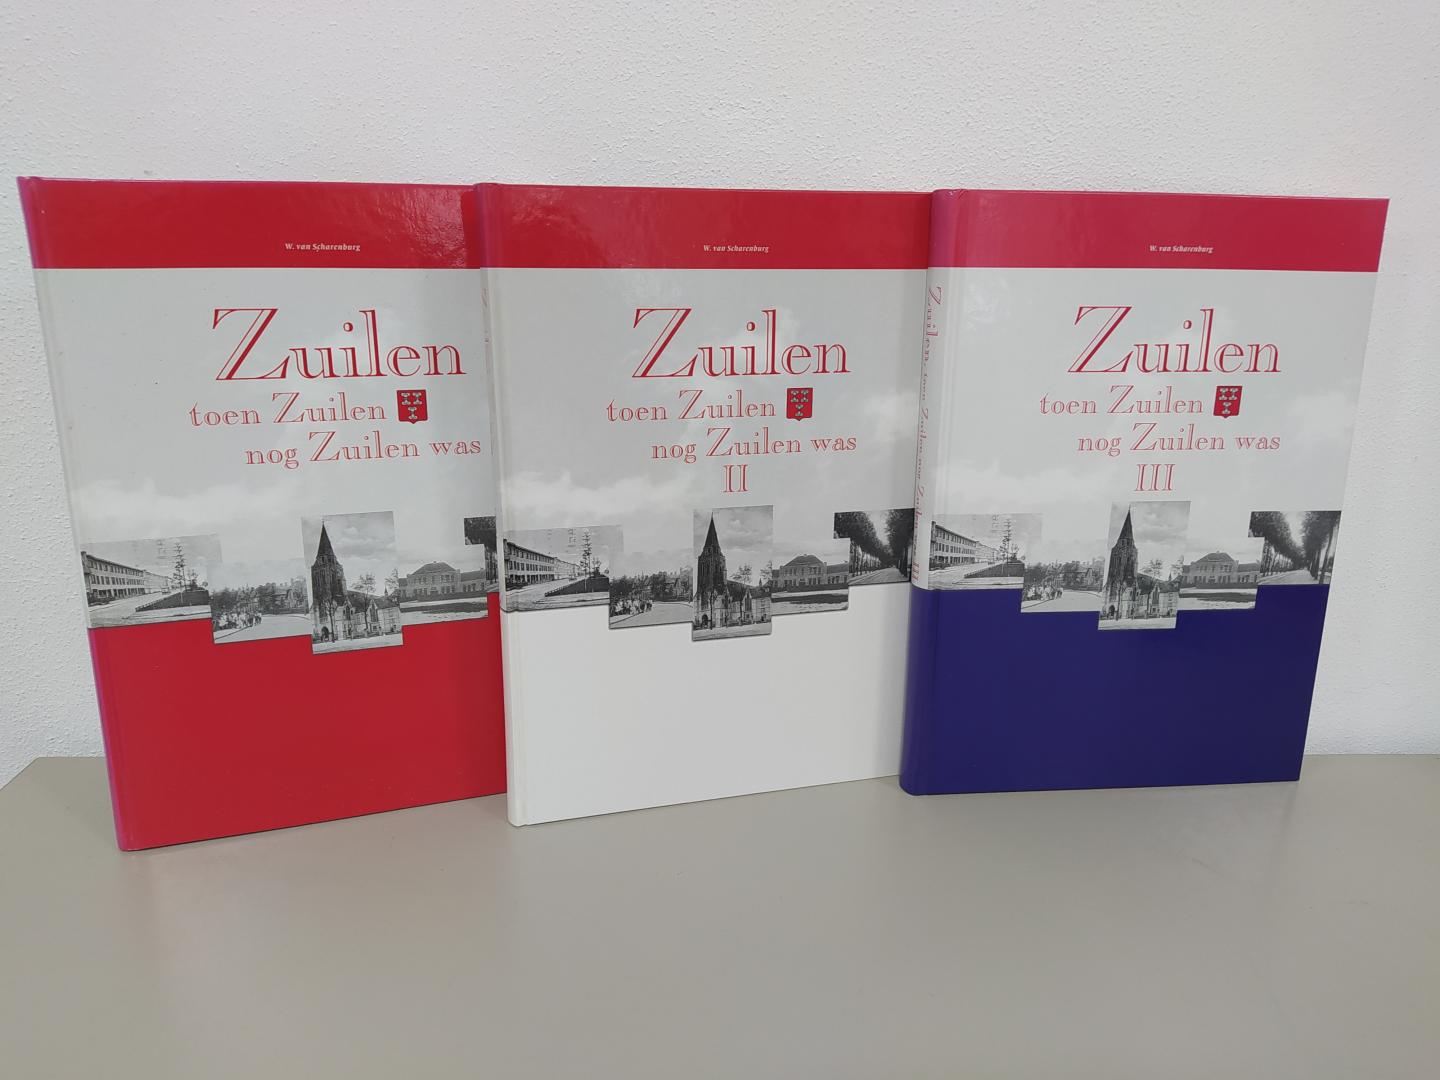 Scharenburg, W. van - Zuilen toen Zuilen nog Zuilen was deel I, II en III